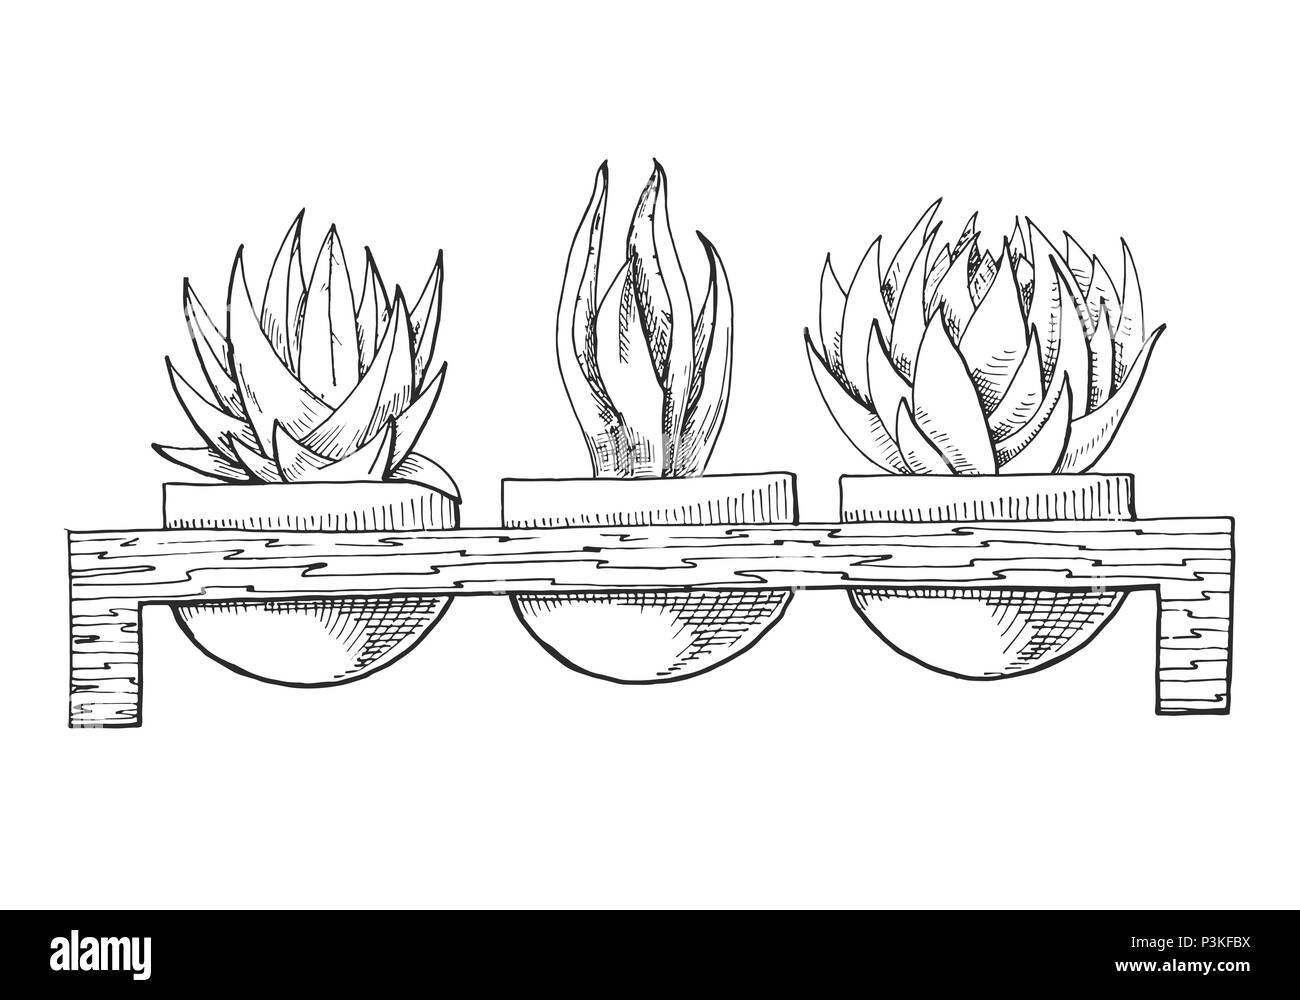 Schizzo di tre piante succulente in vasi su un supporto di legno. Illustrazione vettoriale di un disegno stile. Illustrazione Vettoriale